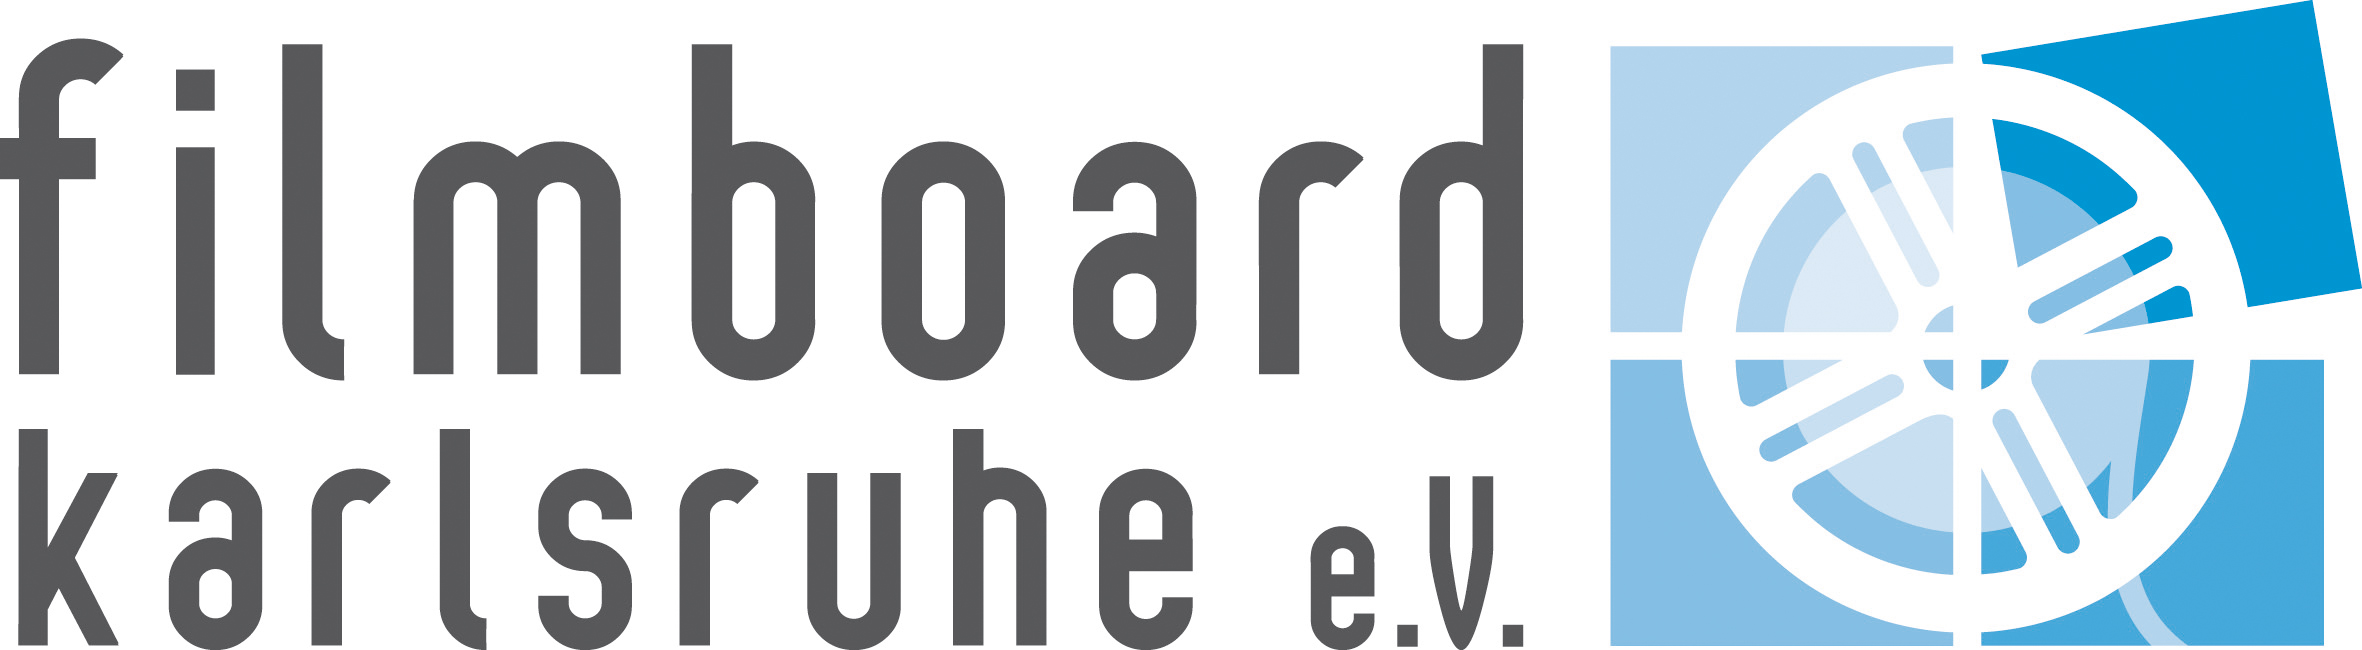 Zu sehen ist das Logo des filmboard karlsruhe e.V.